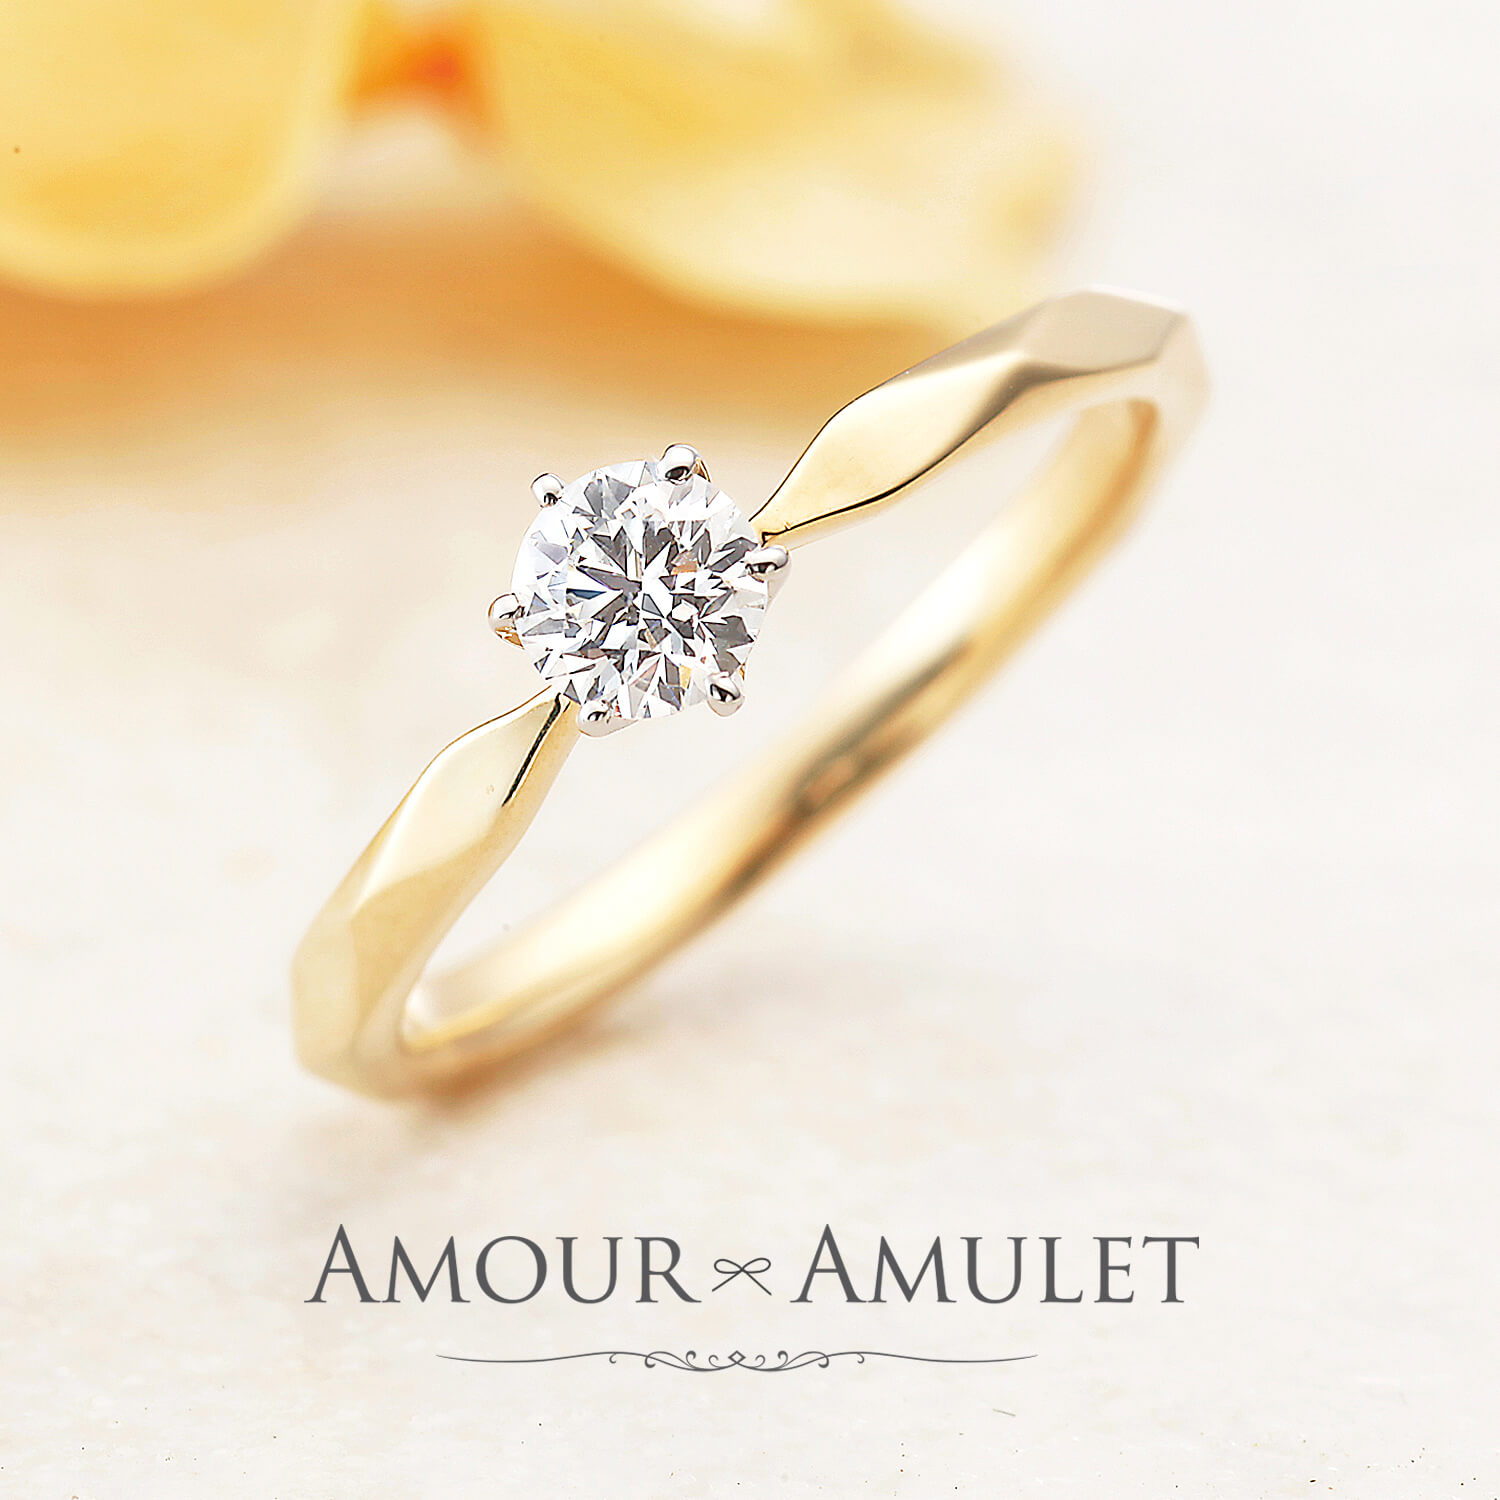 AMOURAMULETアムールアミュレットの婚約指輪MILLEMERCISミルメルシー